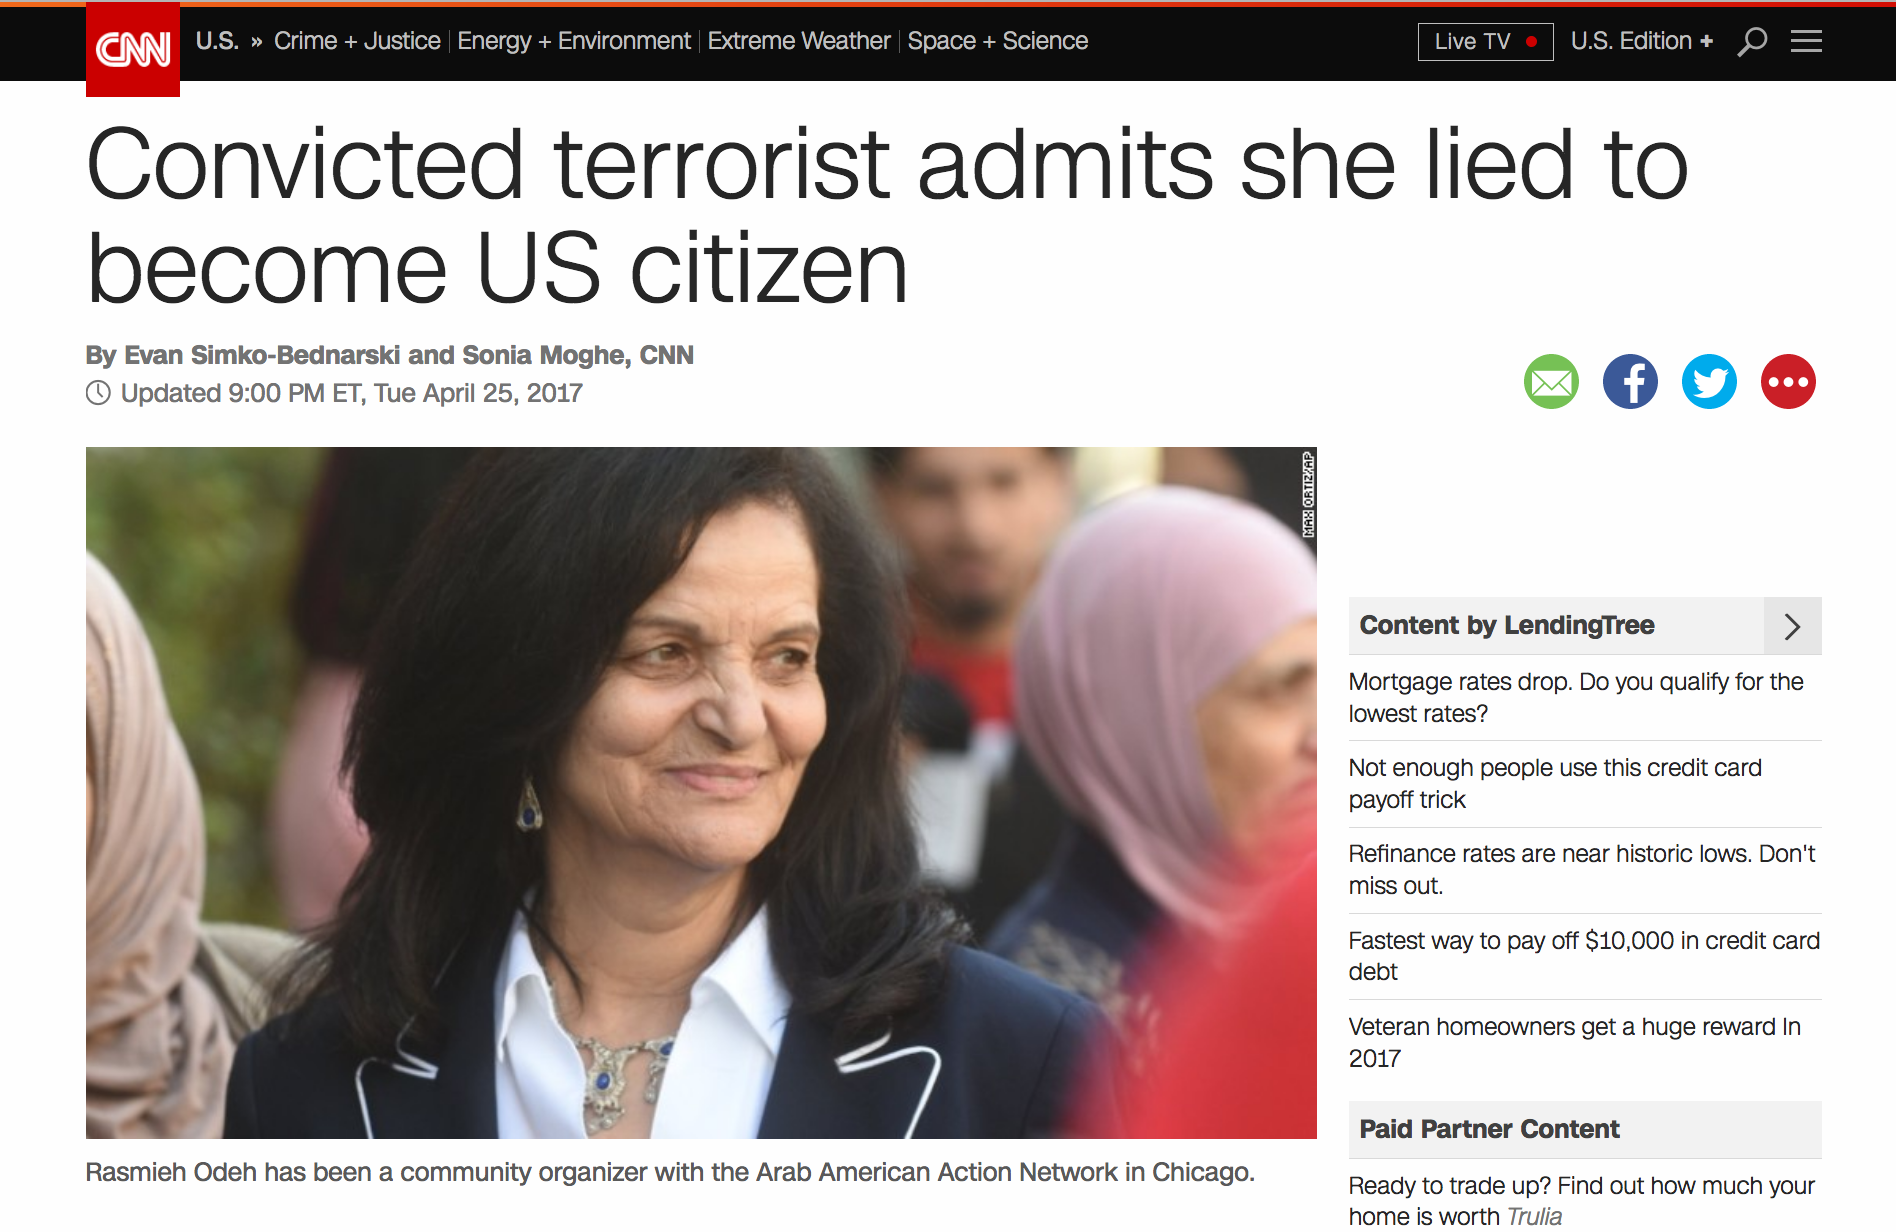 Screenshot from CNN.com